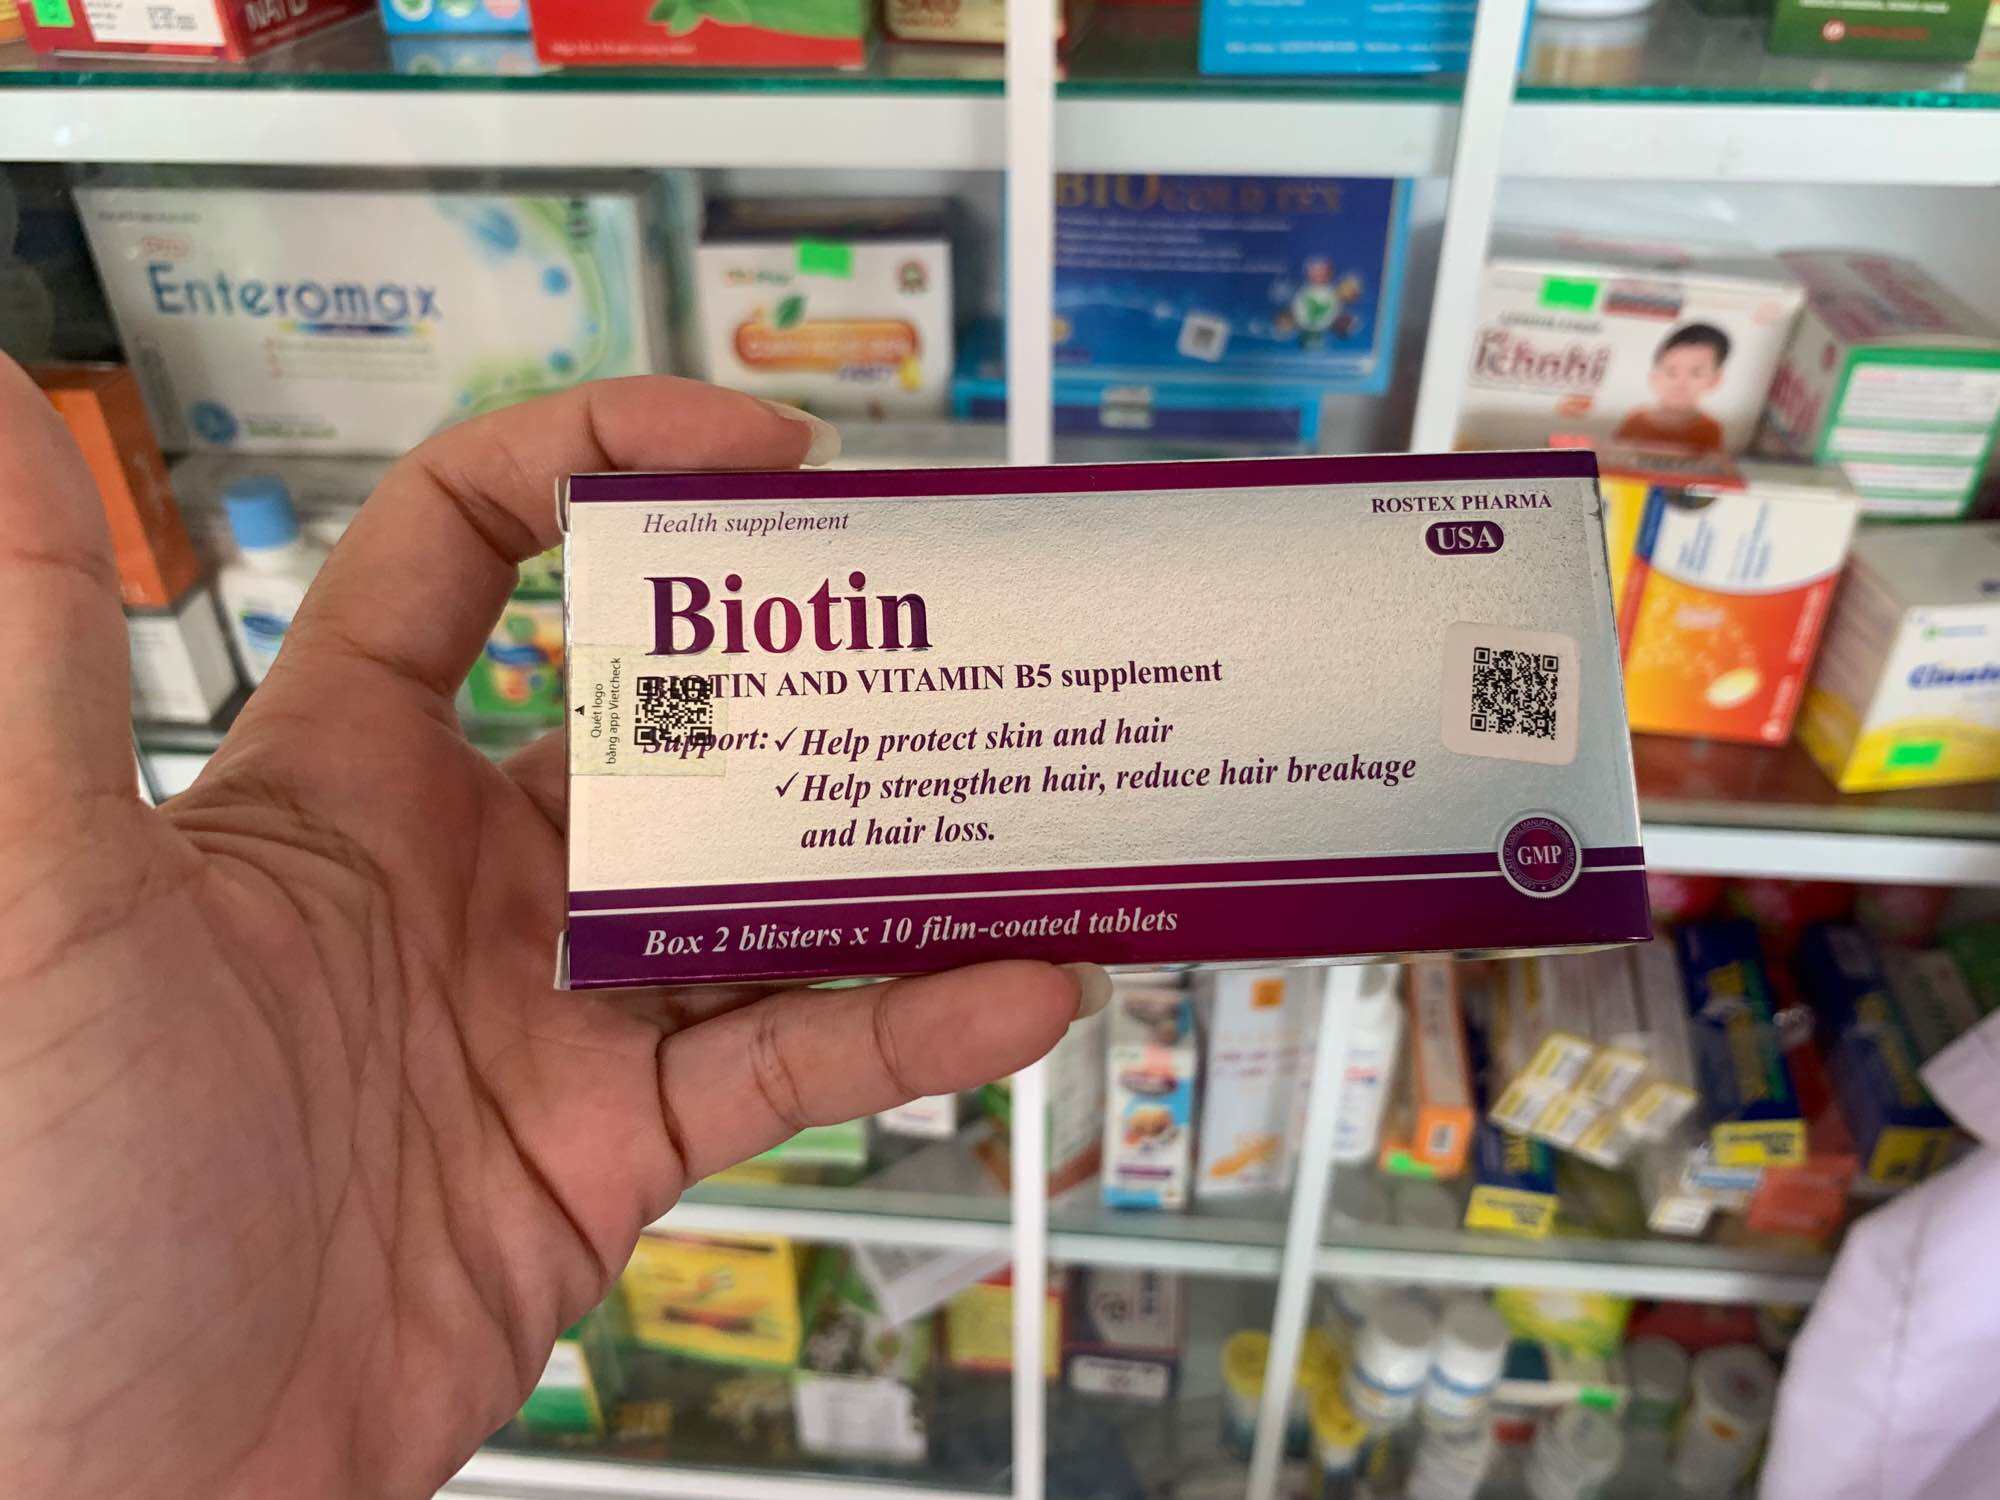 Biotin Rostex viên uống bổ sung biotin và vitamin B5 giúp đẹp da, da mịn màng, tóc dày bóng, móng chắc khỏe (20 viên)